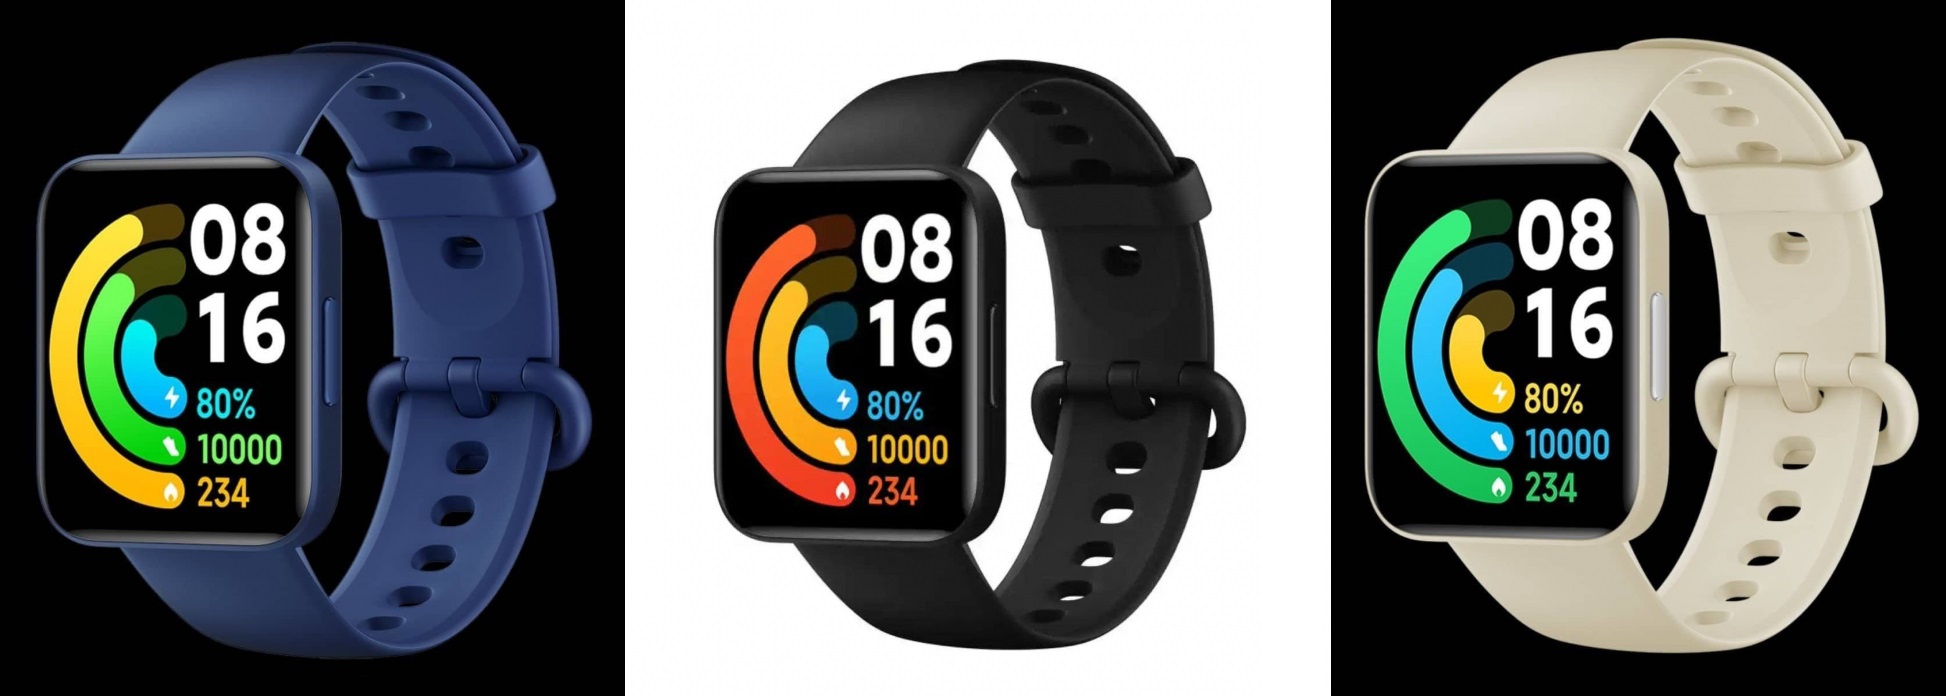 Xiaomi ha publicado imágenes de alta calidad de relojes inteligentes Redmi Watch 2